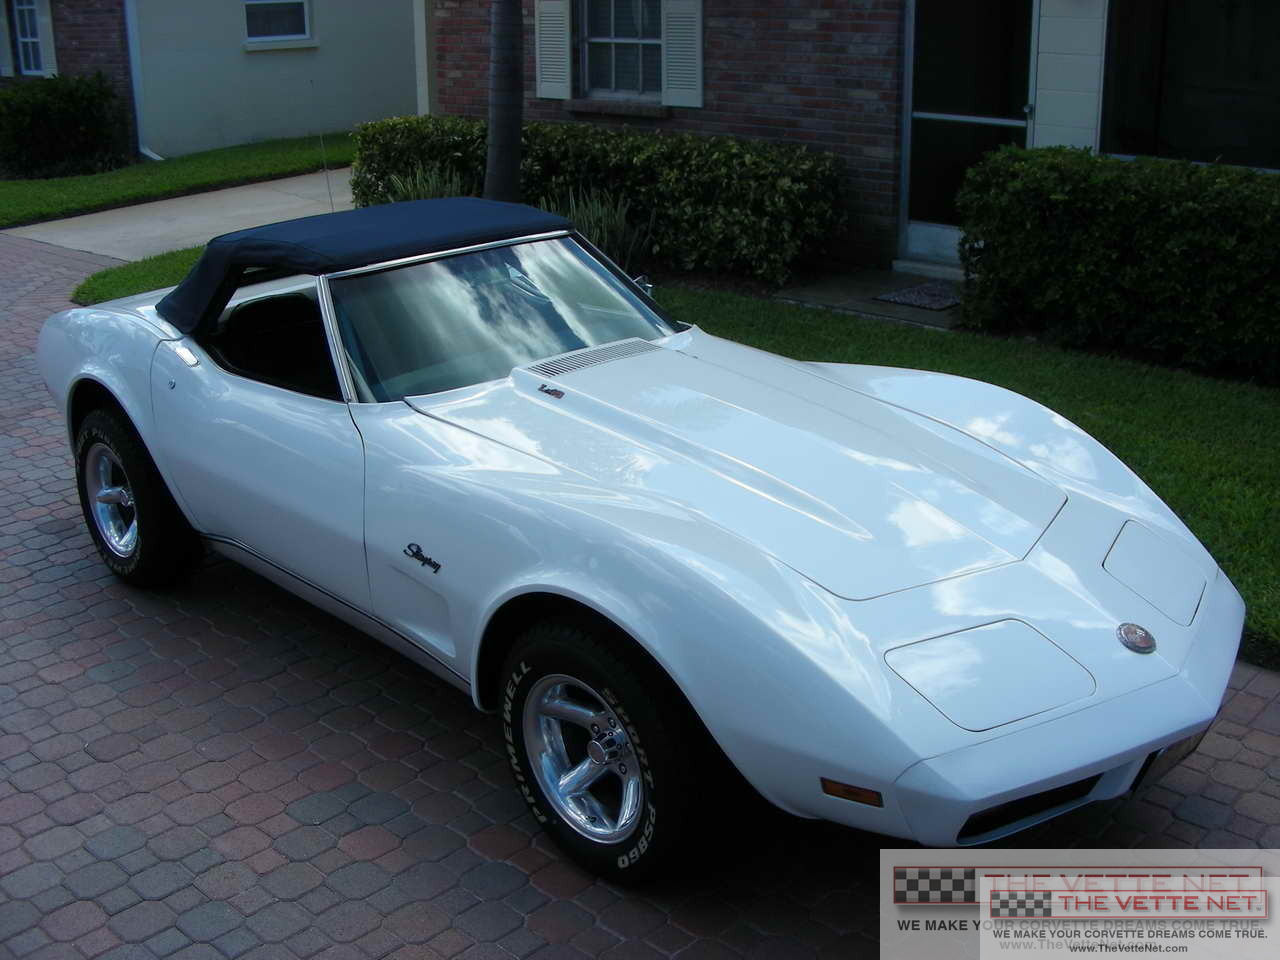 1974 Corvette Convertible White